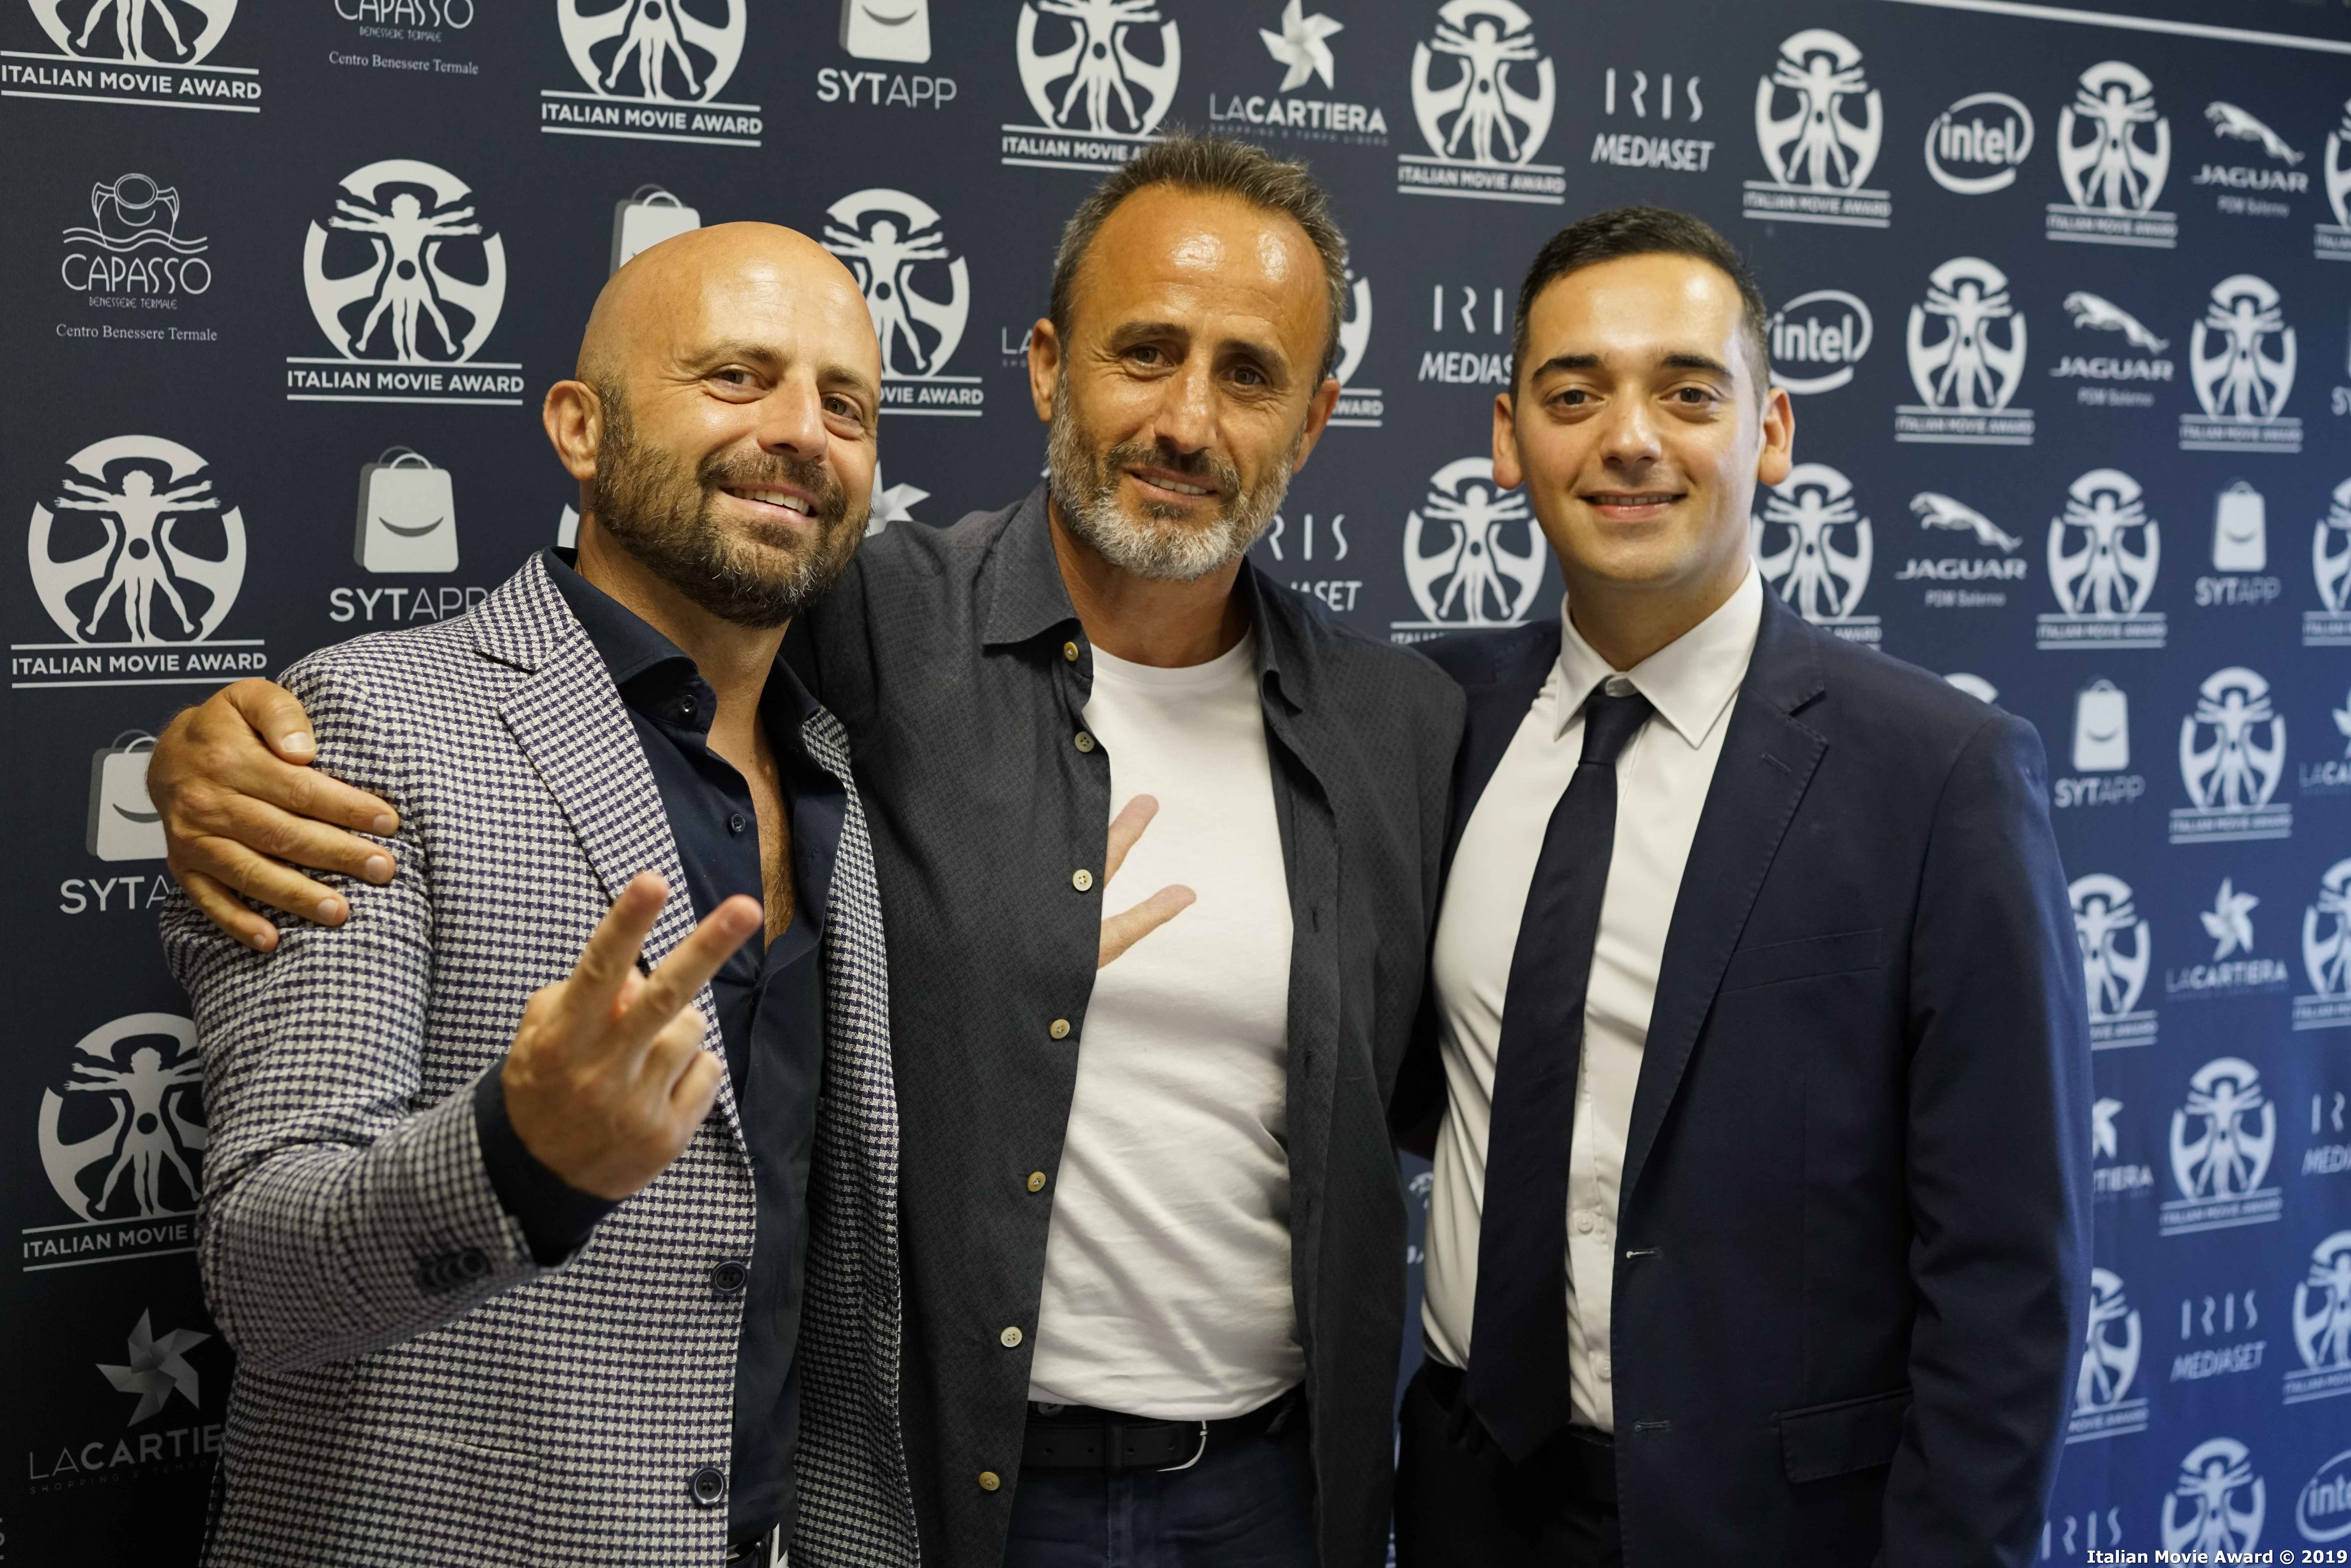 italian_movie_award_2019_conferenza_1_42